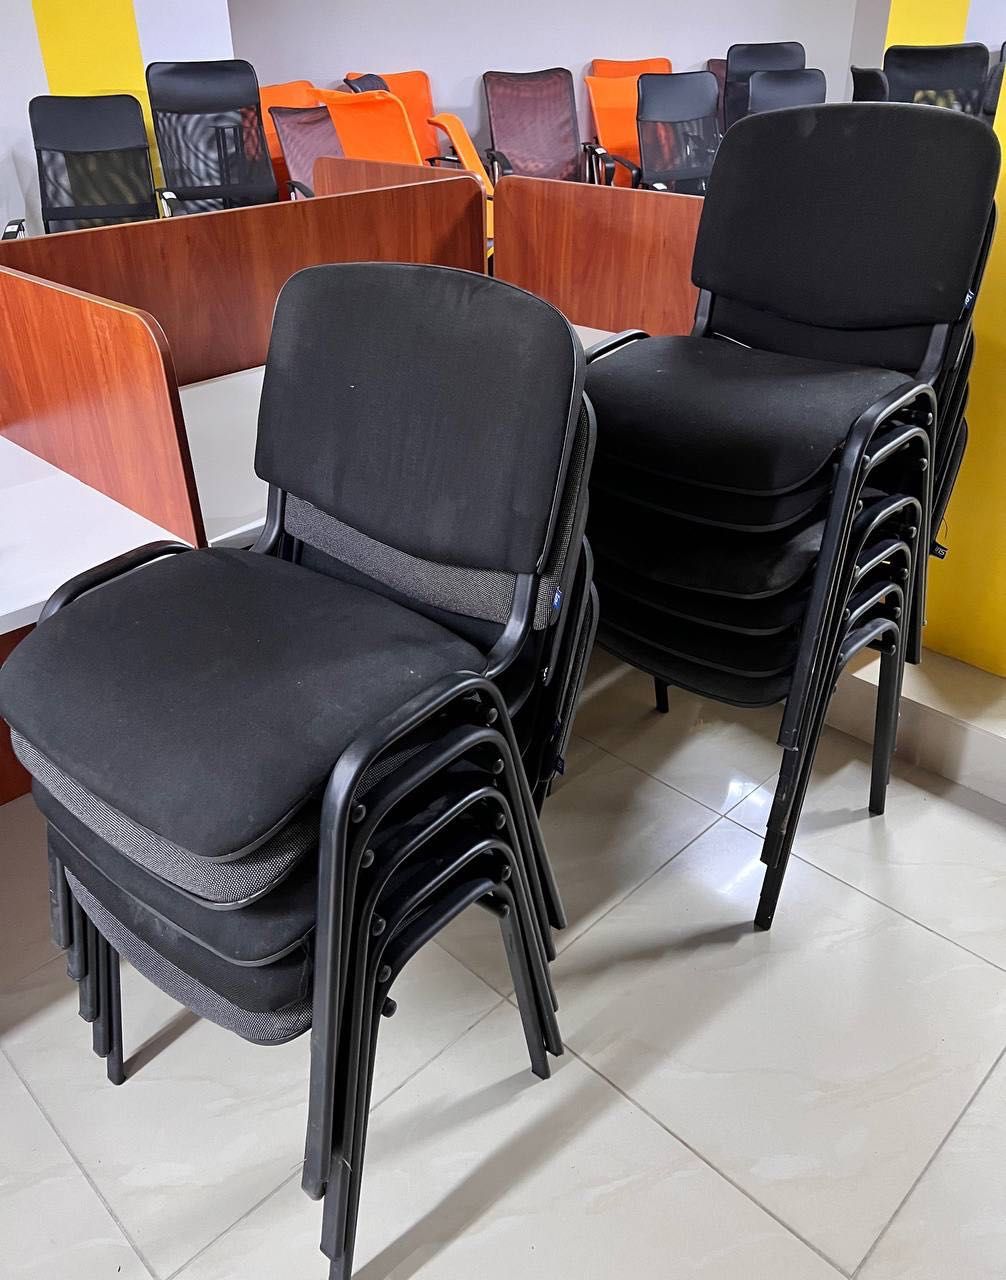 РОЗПРОДАЖ офісних меблів стільці крісла на колесах